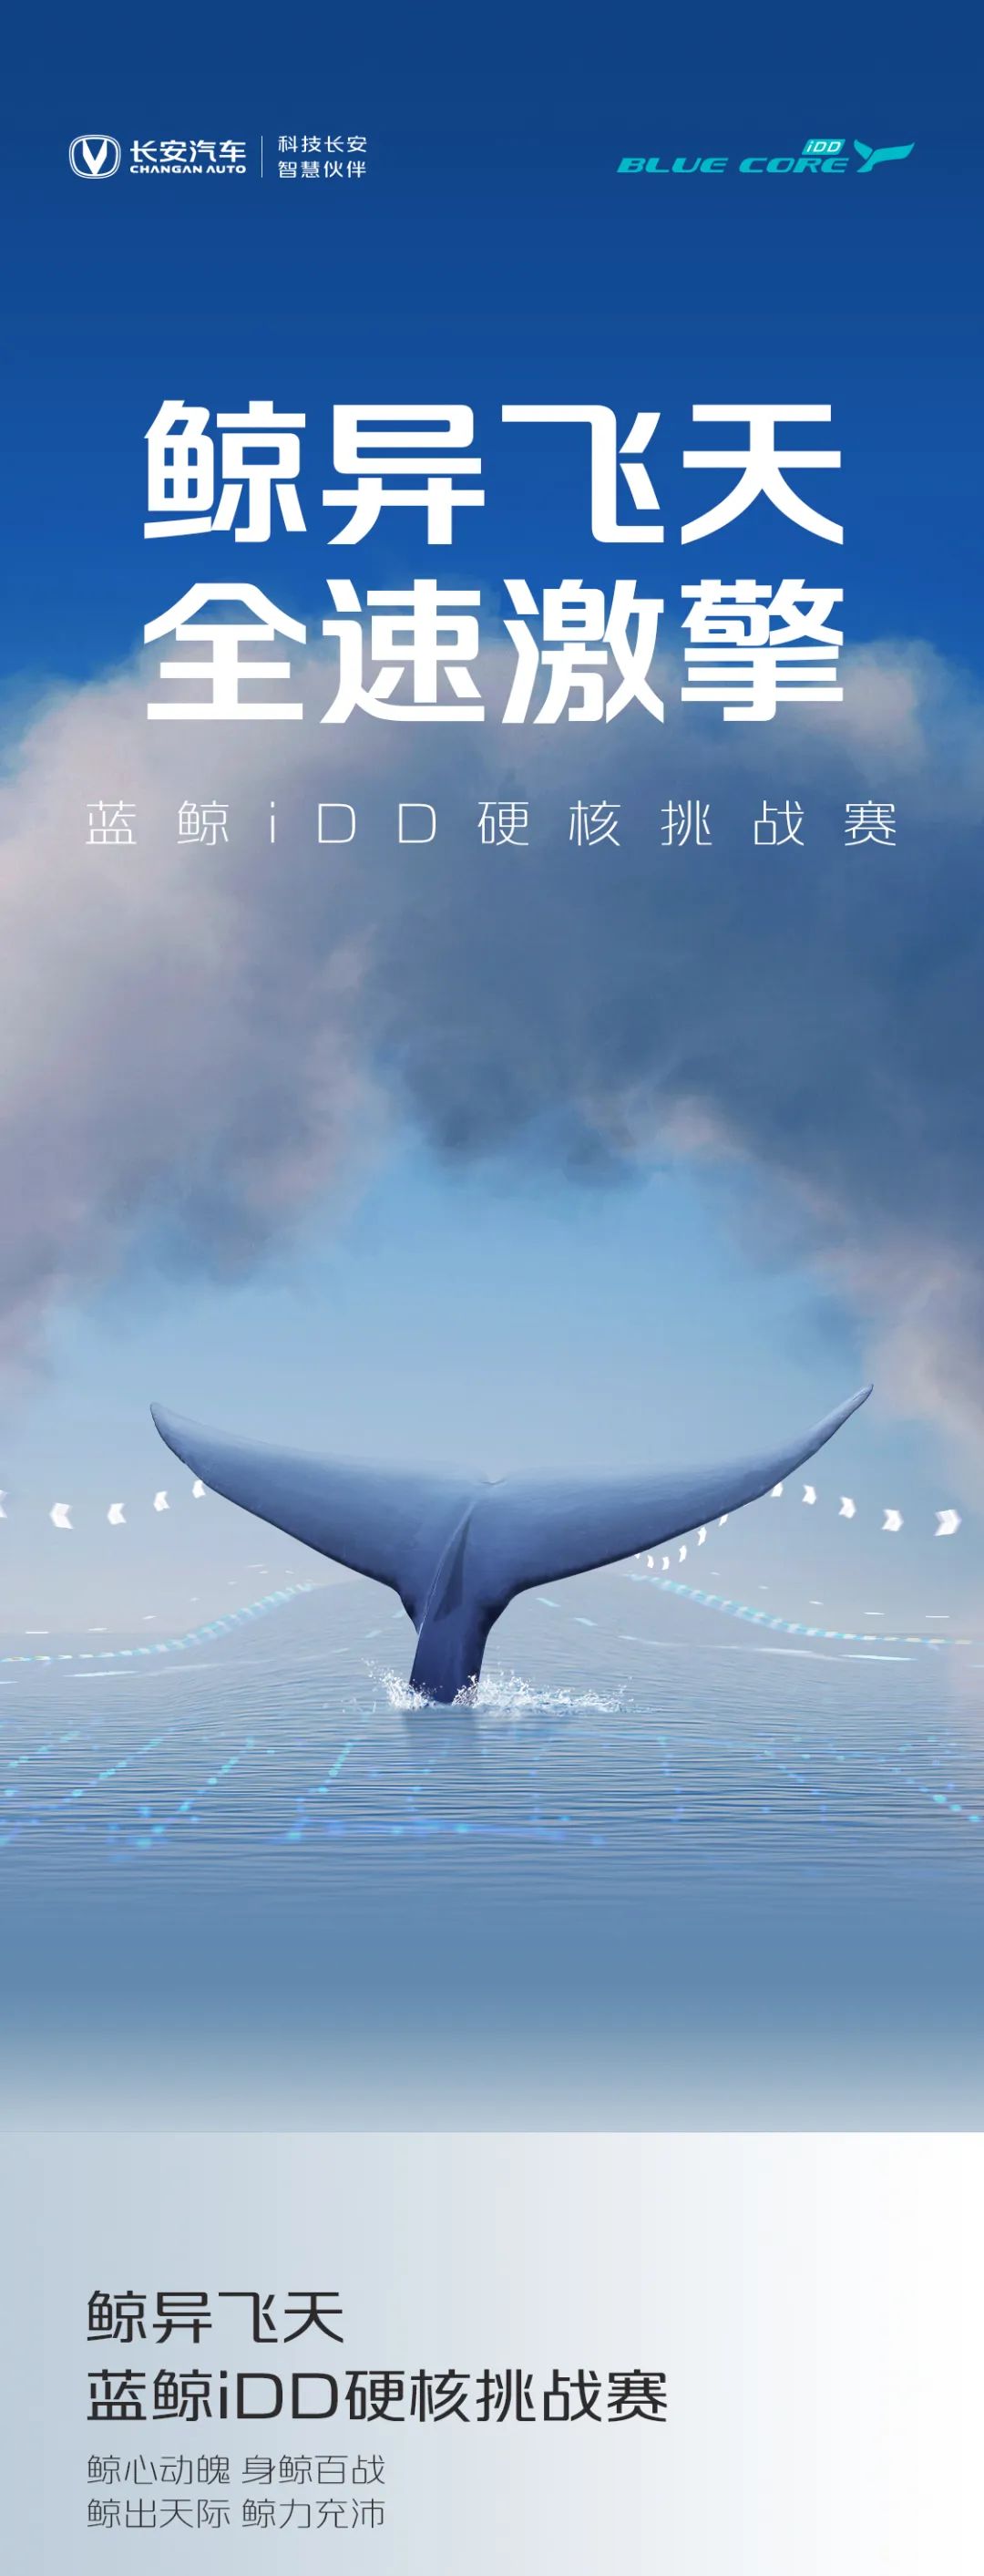 点击查看详细信息<br>标题：蓝鲸iDD硬核挑战赛丨高能无惧挑战 阅读次数：146